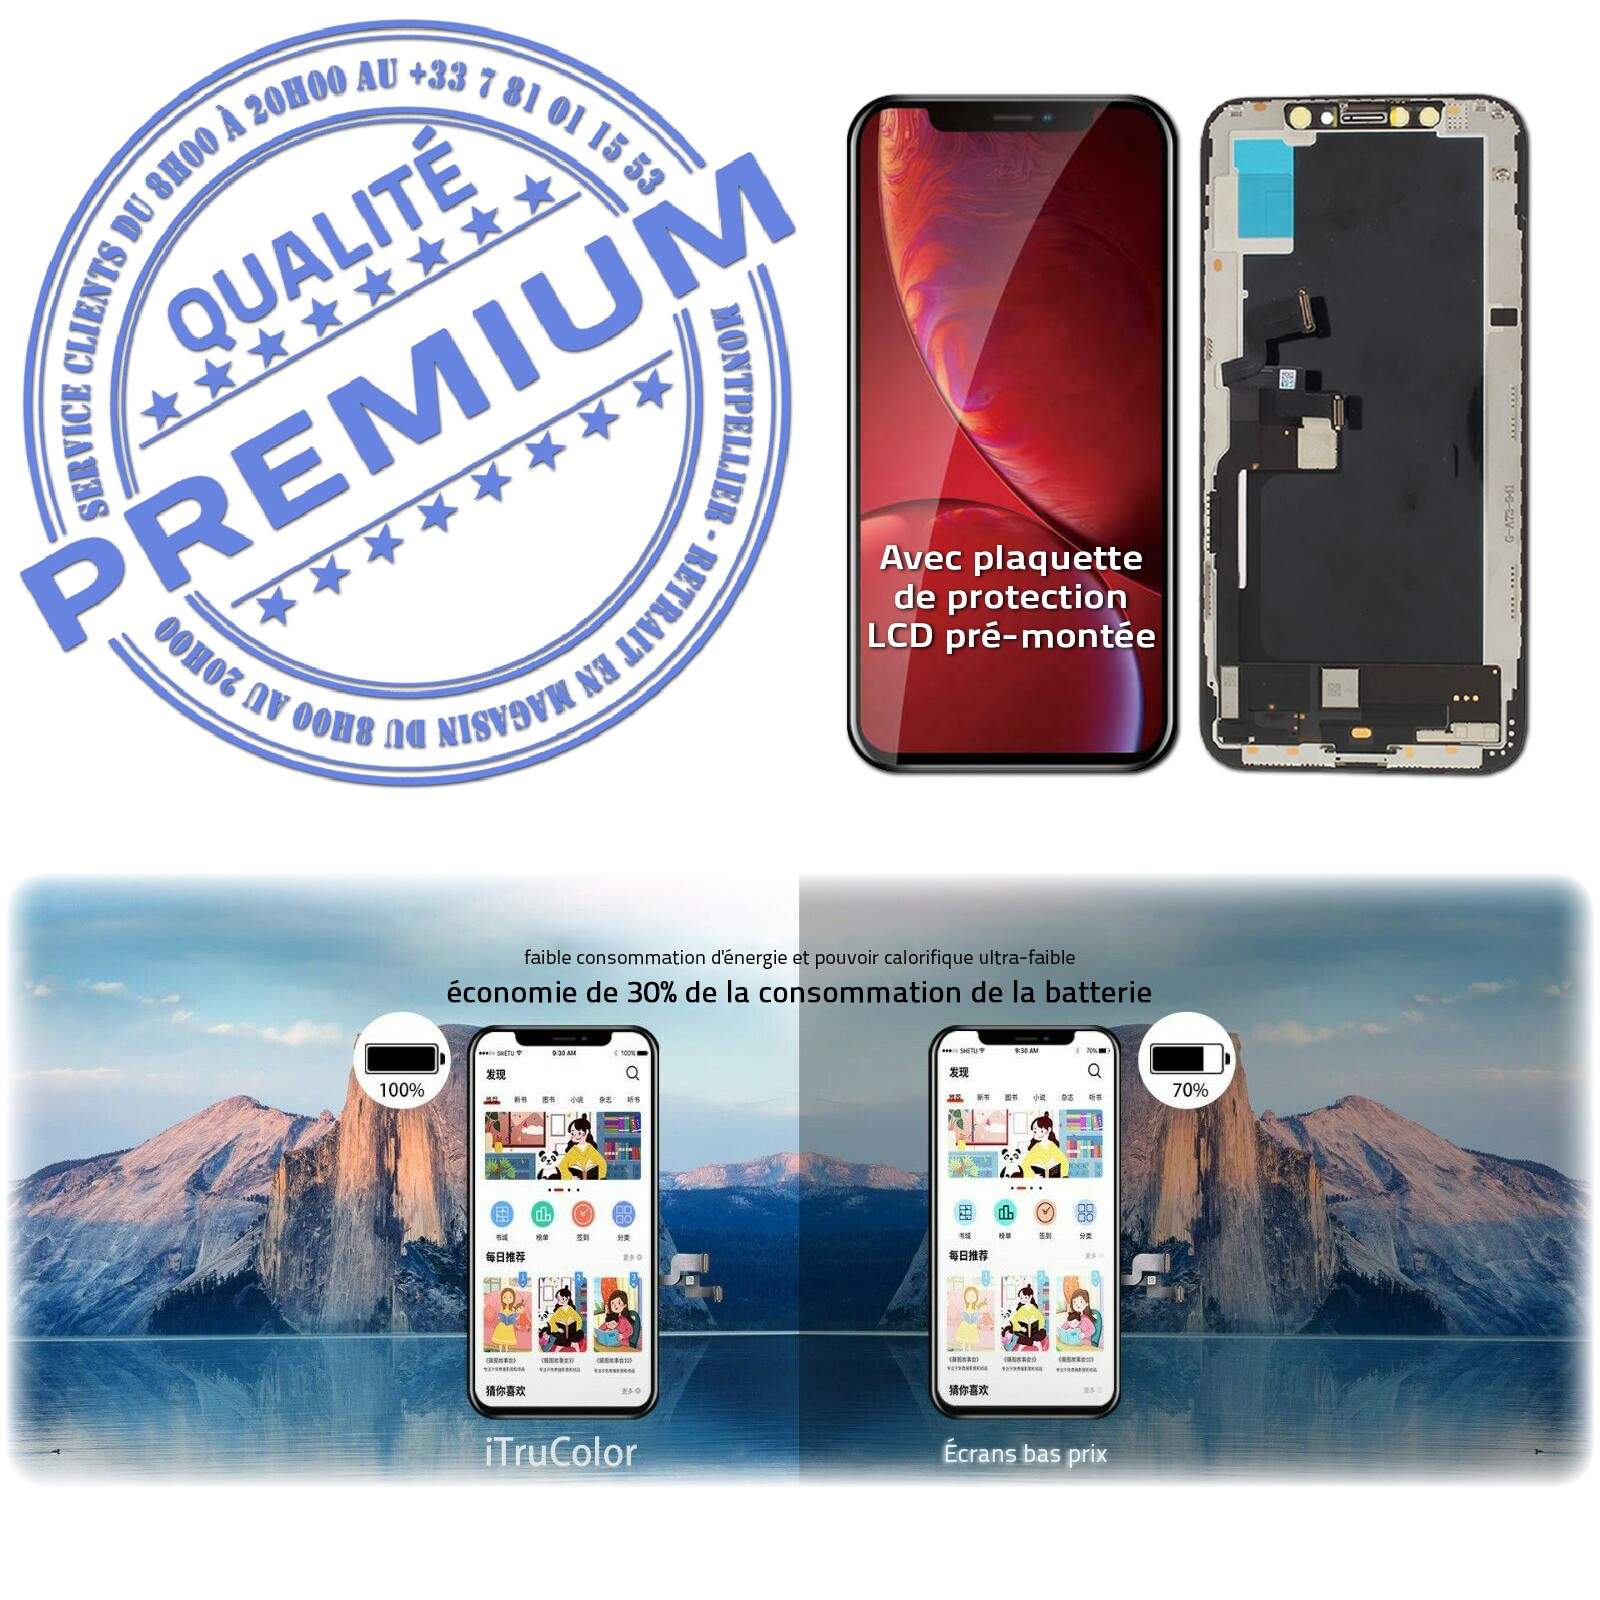 LCD iPhone XS A2097 Écran inCELL Apple PREMIUM Super Retina 5,8 pouces Vitre SmartPhone Affichage True Tone Cristaux Liquides